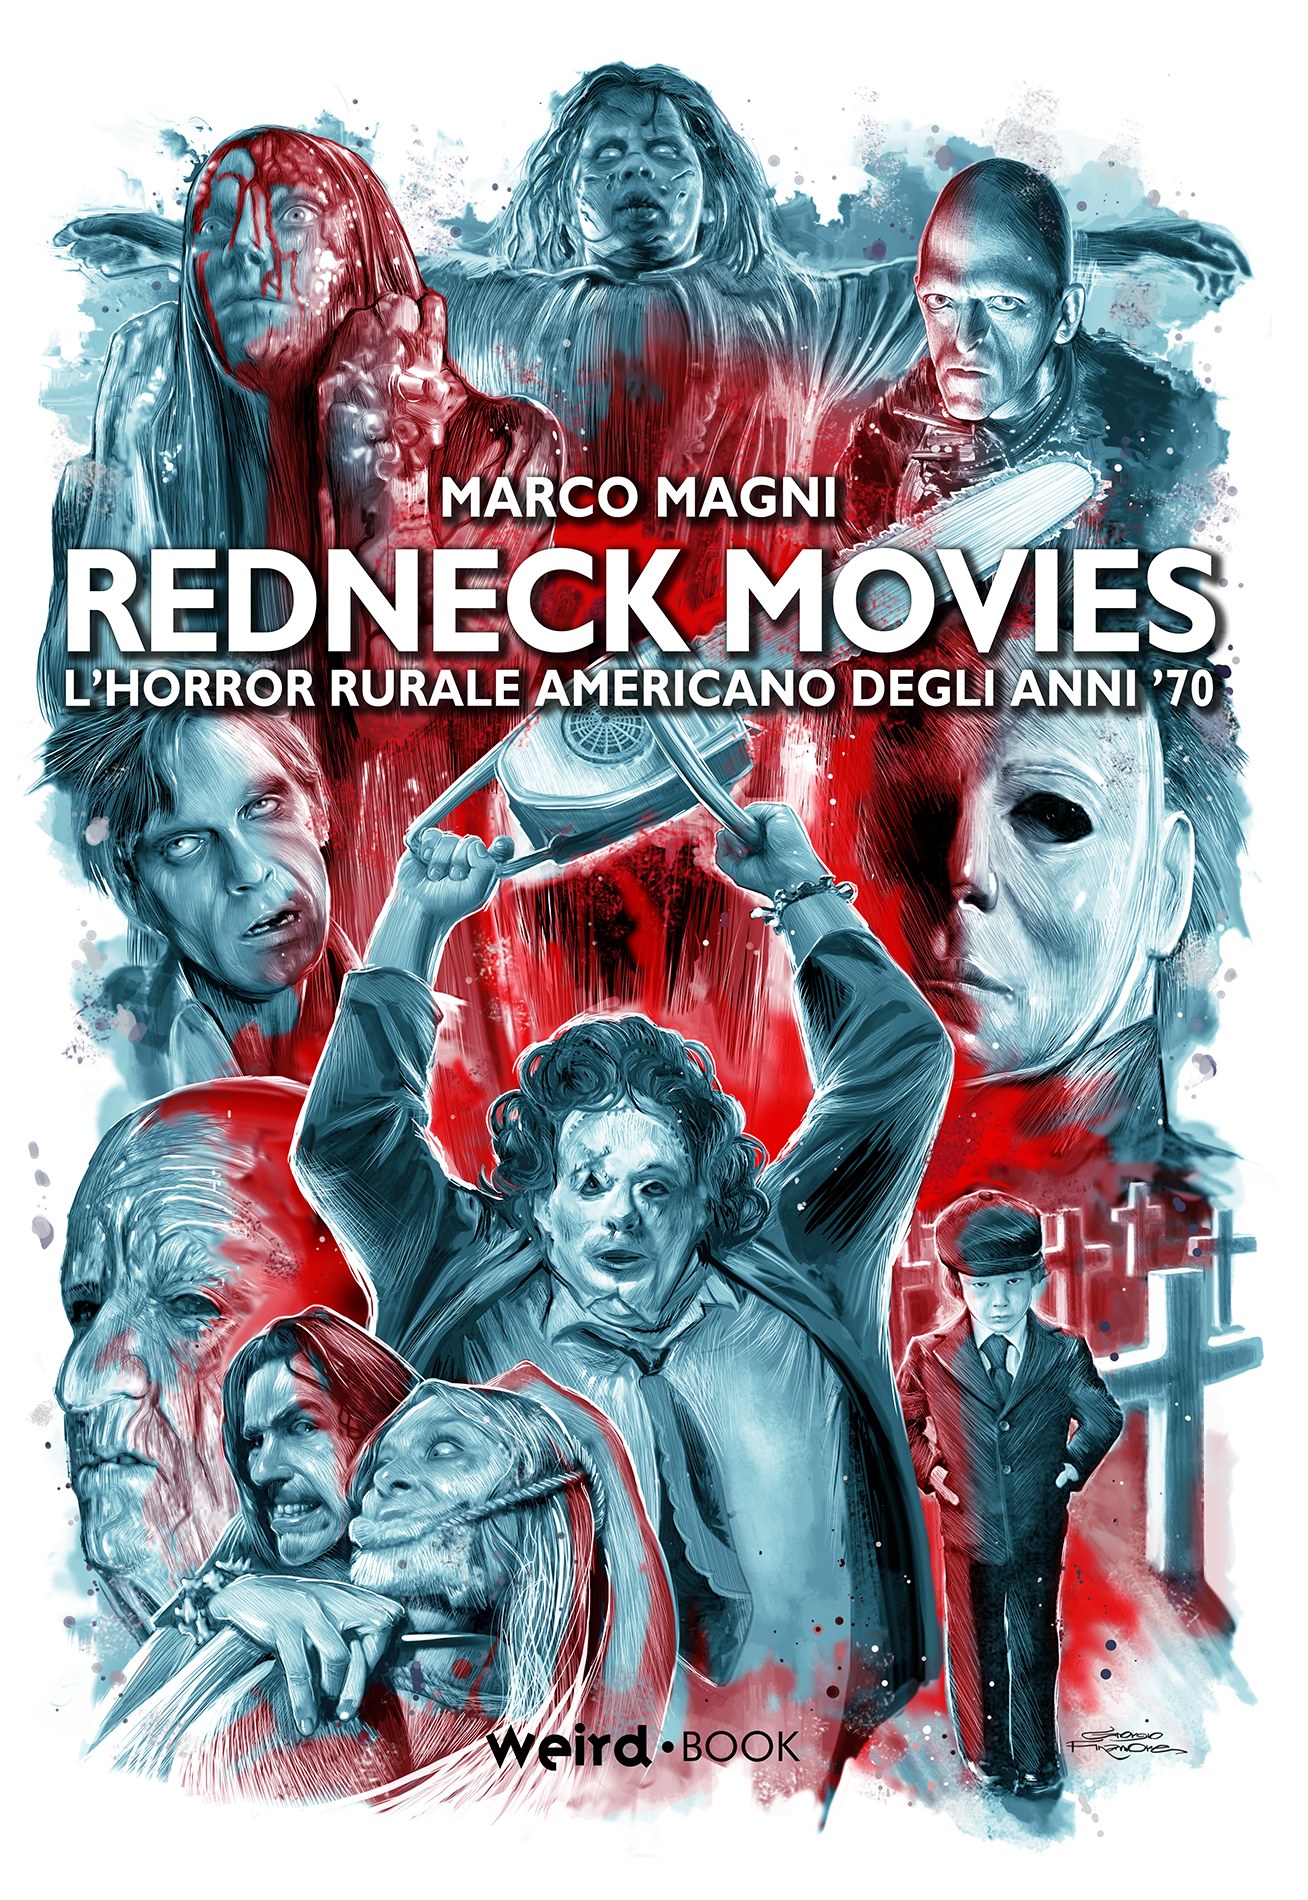 Libri Marco Magni - Redneck Movies NUOVO SIGILLATO, EDIZIONE DEL 06/10/2020 SUBITO DISPONIBILE